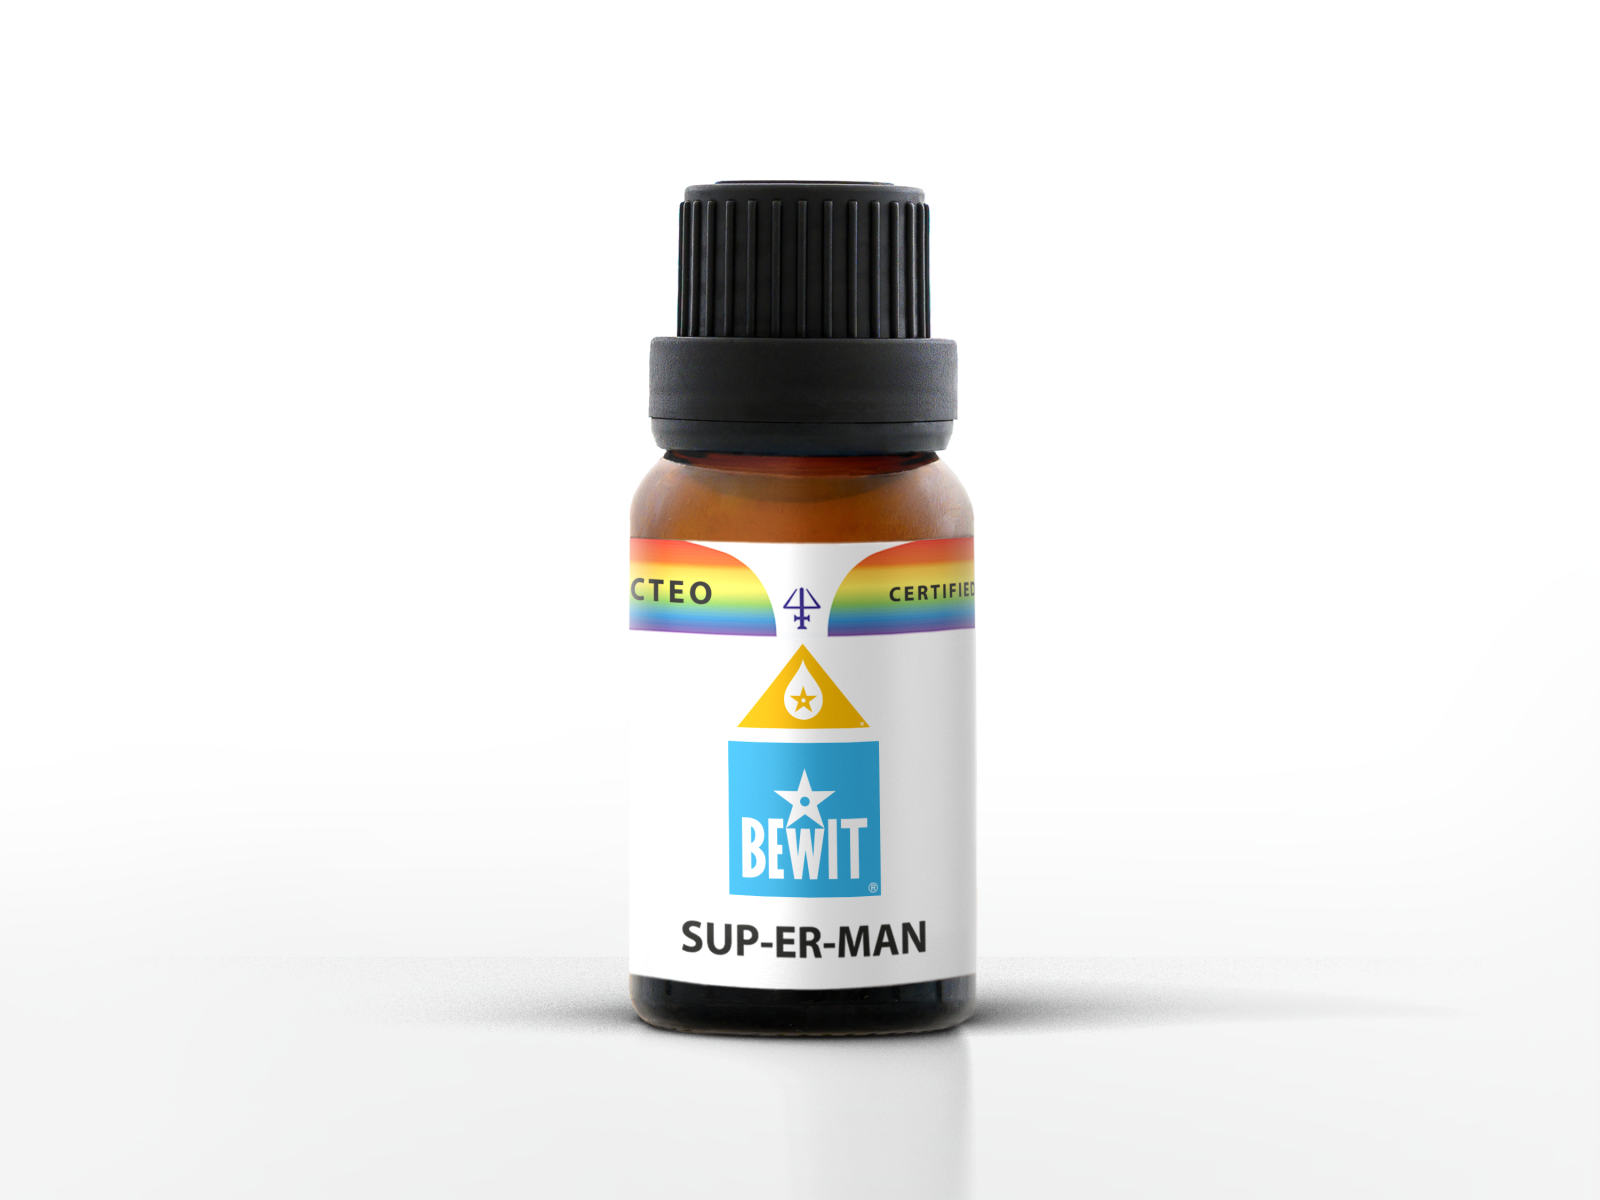 BEWIT SUP-ER-MAN - Blend of essential oils